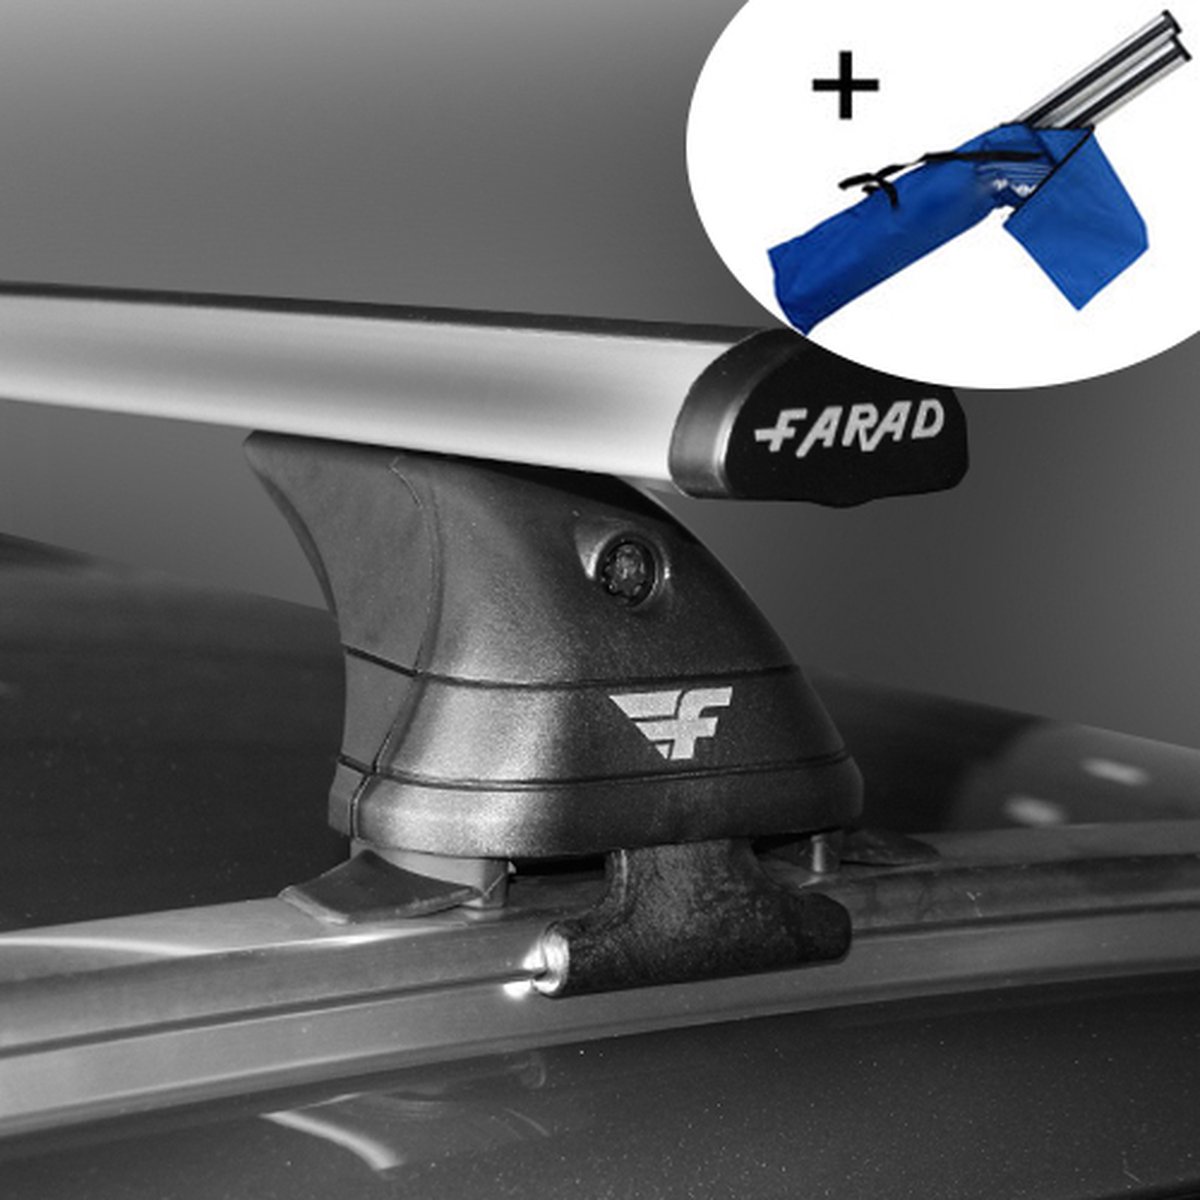 Dakdragers geschikt voor Mini Cooper 5 deurs hatchback vanaf 2014 - Aluminium - inclusief dakdrager opbergtas